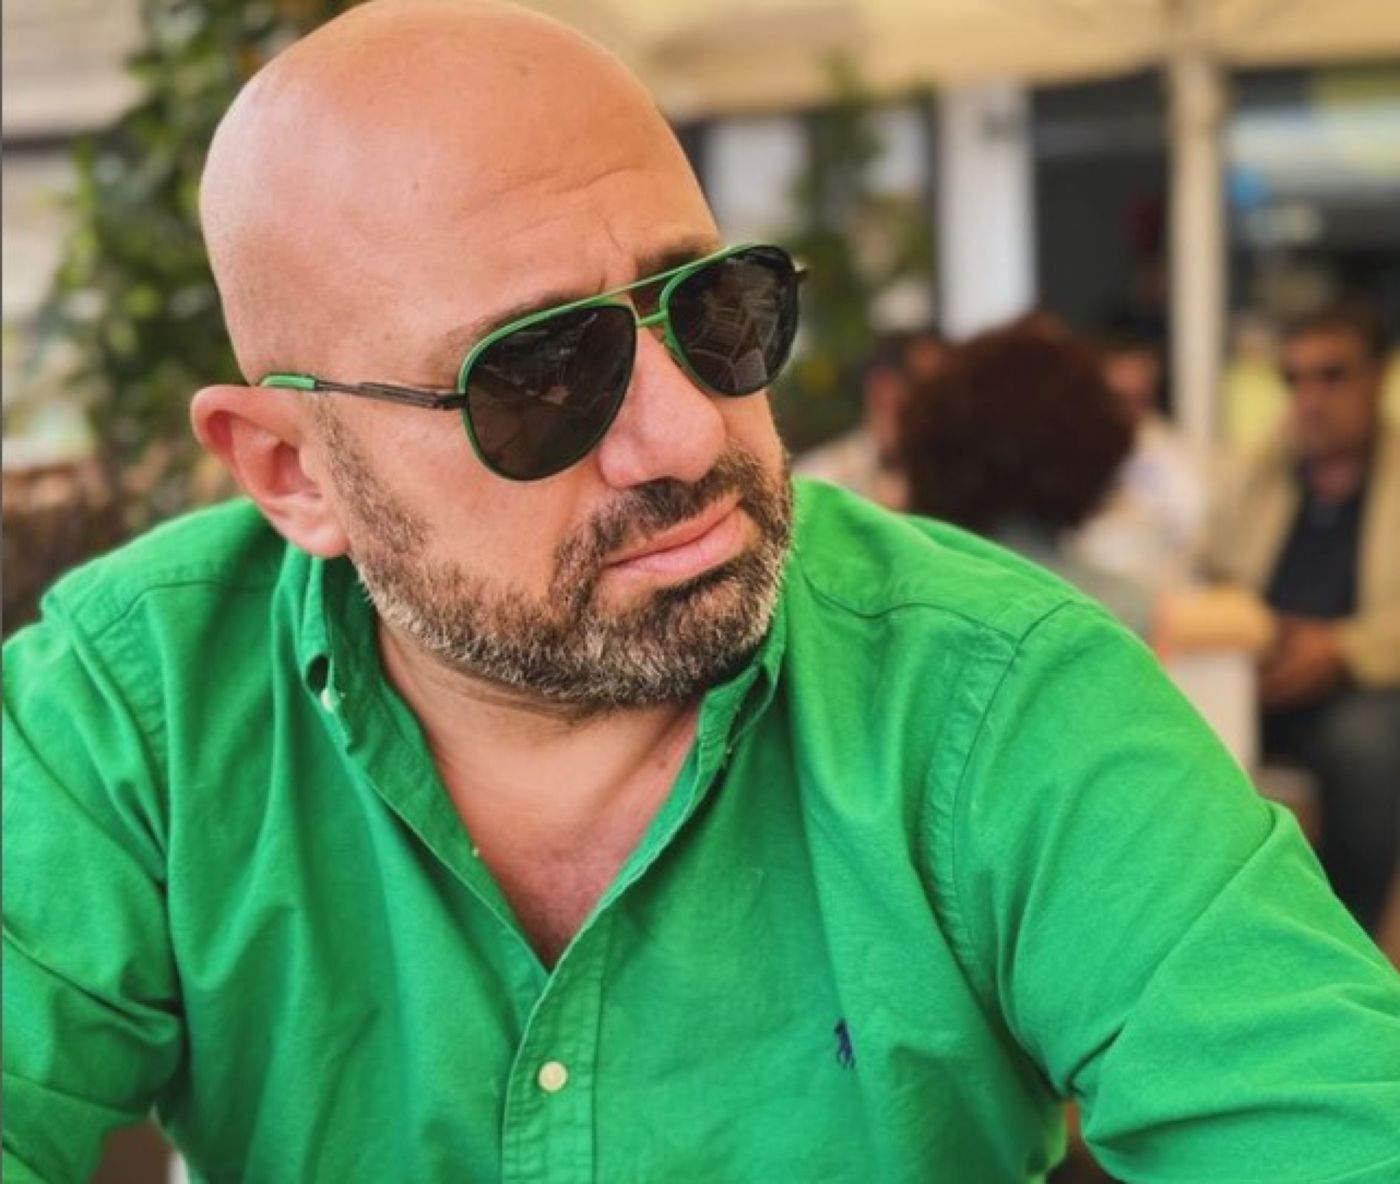 Acuzații grave la adresa lui Cătălin Scărlătescu. Ce spune avocata celebrului bucătar